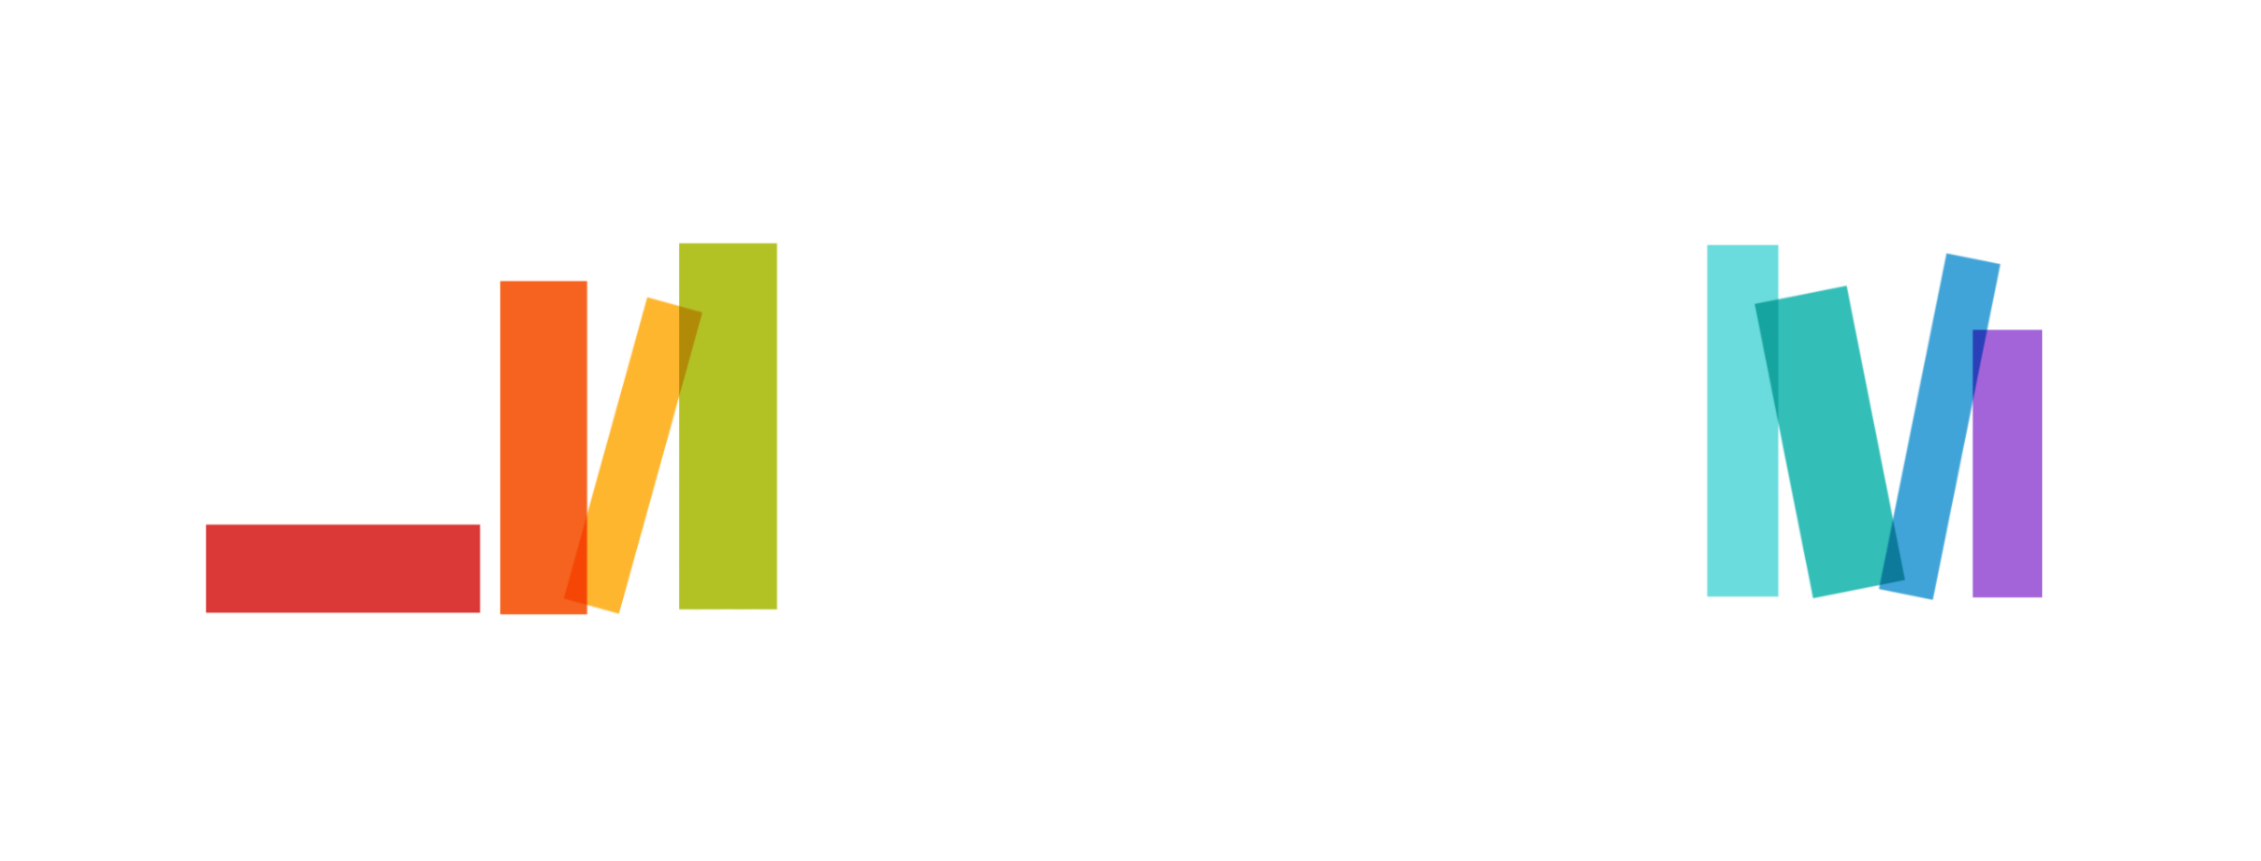 ECLAIR Community